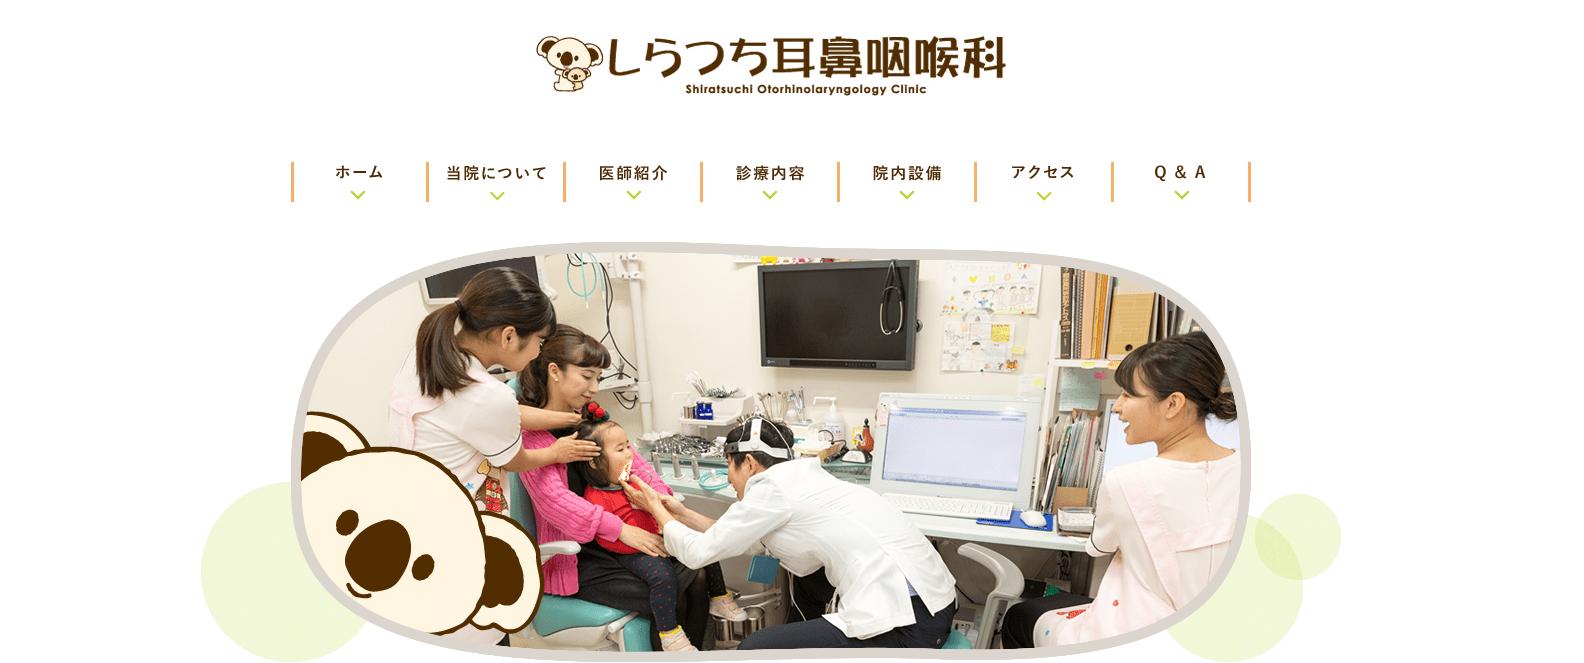 福岡市で評判の耳鼻咽喉科クリニック5選 しらつち耳鼻咽喉科